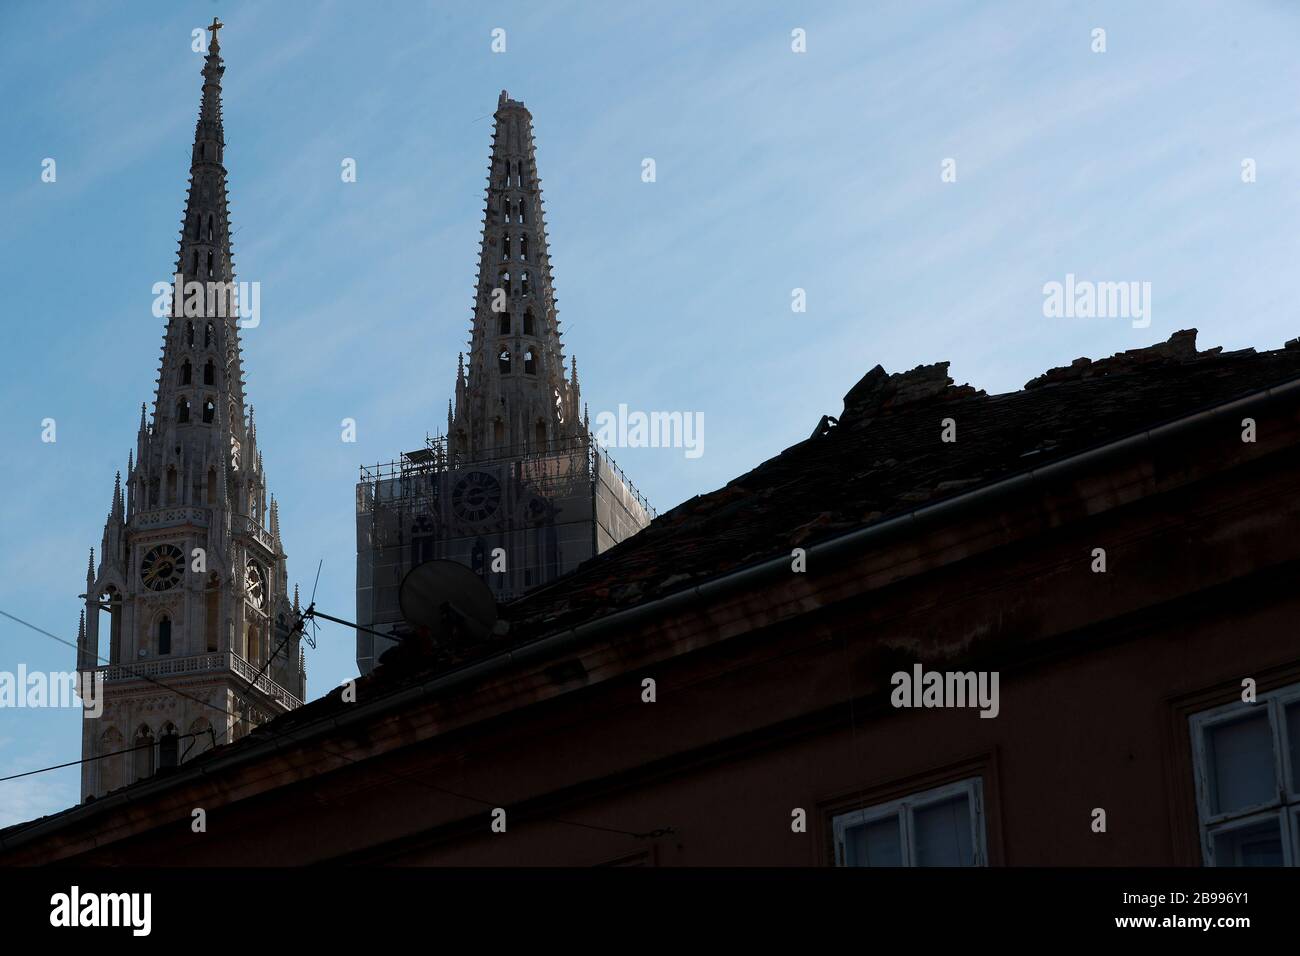 (200324) -- ZAGREB, le 24 mars 2020 (Xinhua) -- la photo prise le 23 mars 2020 montre la flèche de la cathédrale de Zagreb endommagée par un tremblement de terre à Zagreb, en Croatie. Une série de répliques ont continué à hochet la capitale croate Zagreb lundi après un séisme de magnitude 5,4 qui a gravement endommagé la ville un jour plus tôt. Le ministre croate de l'intérieur, Davor Bozinovic, a confirmé lundi qu'il y avait plus de 250 bâtiments endommagés, dont de nombreuses reliques culturelles. Plus de 7 000 propriétés signalées pour l'évaluation des dommages. (Sanjin Strukic/Pixsell via Xinhua) Banque D'Images